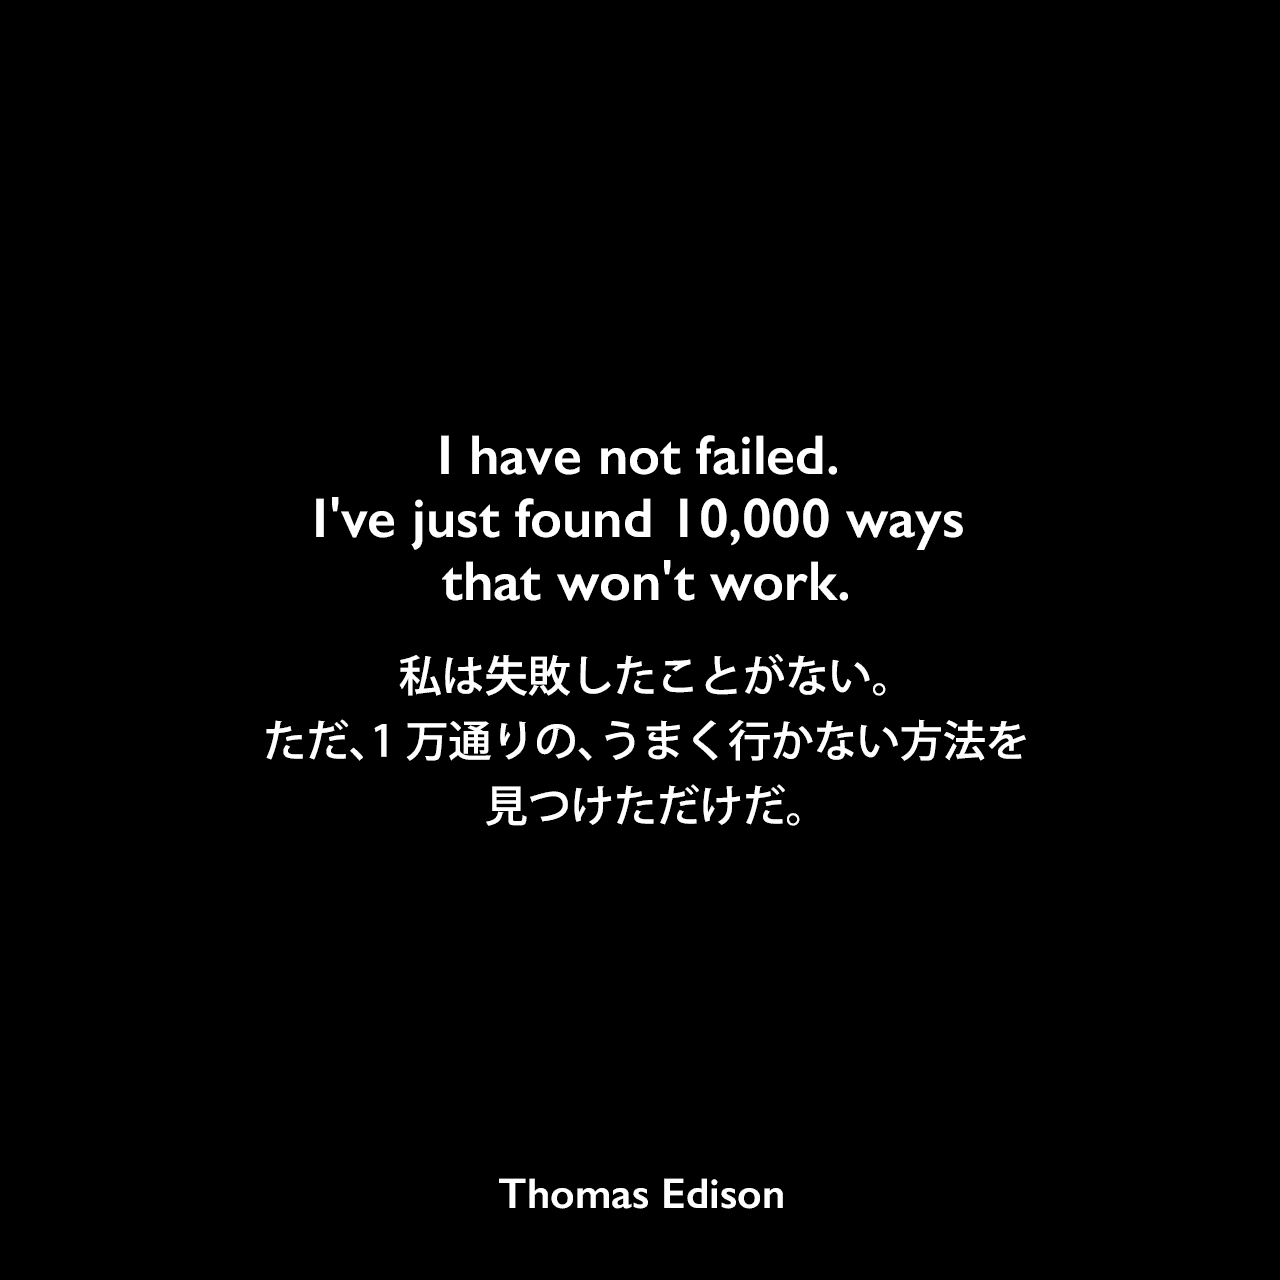 I have not failed. I’ve just found 10,000 ways that won’t work.私は失敗したことがない。ただ、1万通りの、うまく行かない方法を見つけただけだ。